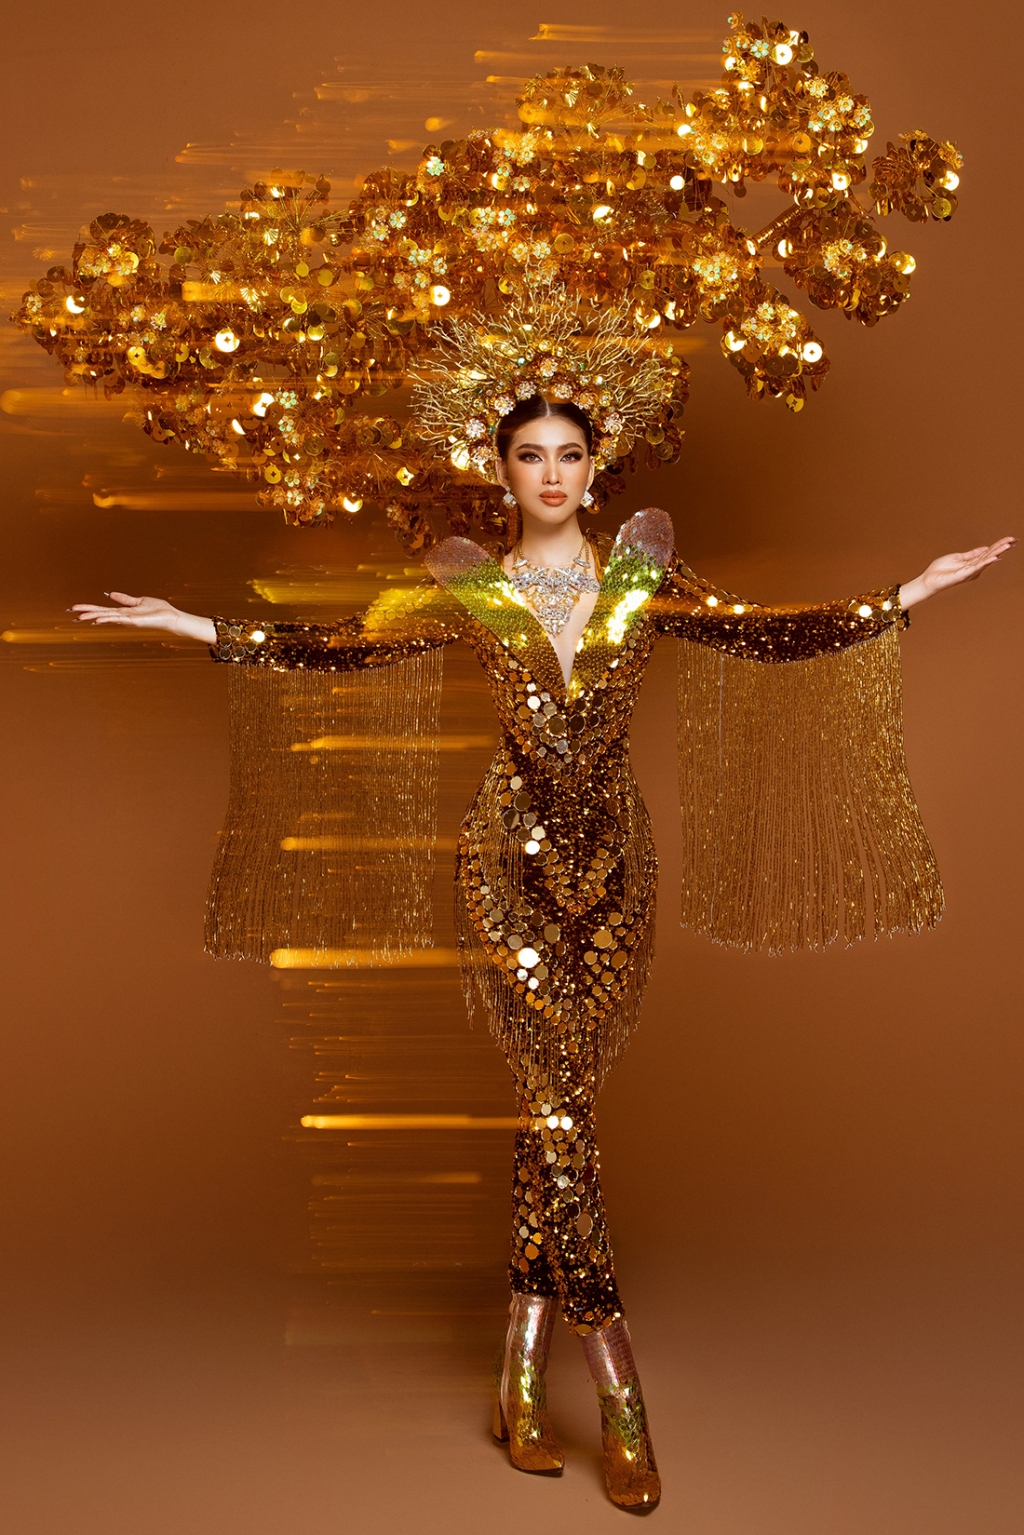 Á hậu Ngọc Thảo 'chịu chơi' tung bộ trang phục 'Lá ngọc cành vàng' nặng 30kg